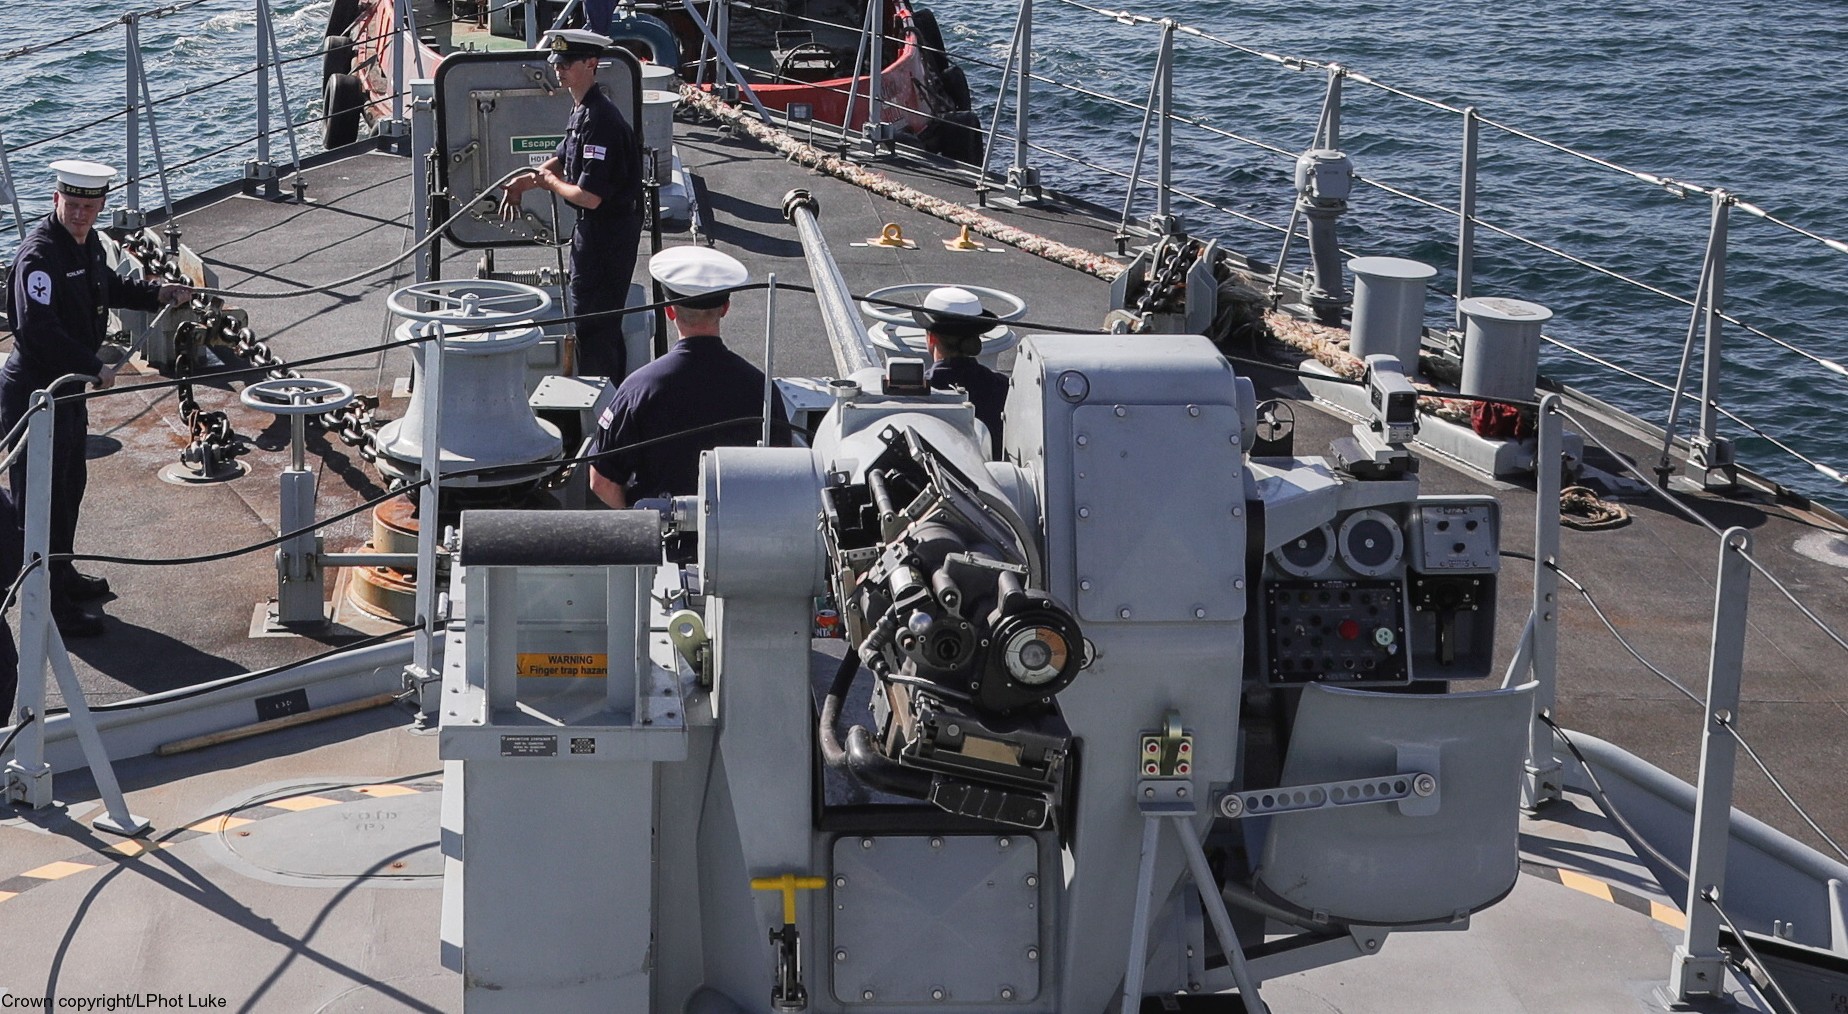 p-224 hms trent river class offshore patrol vessel opv royal navy 07 ds30m machine gun